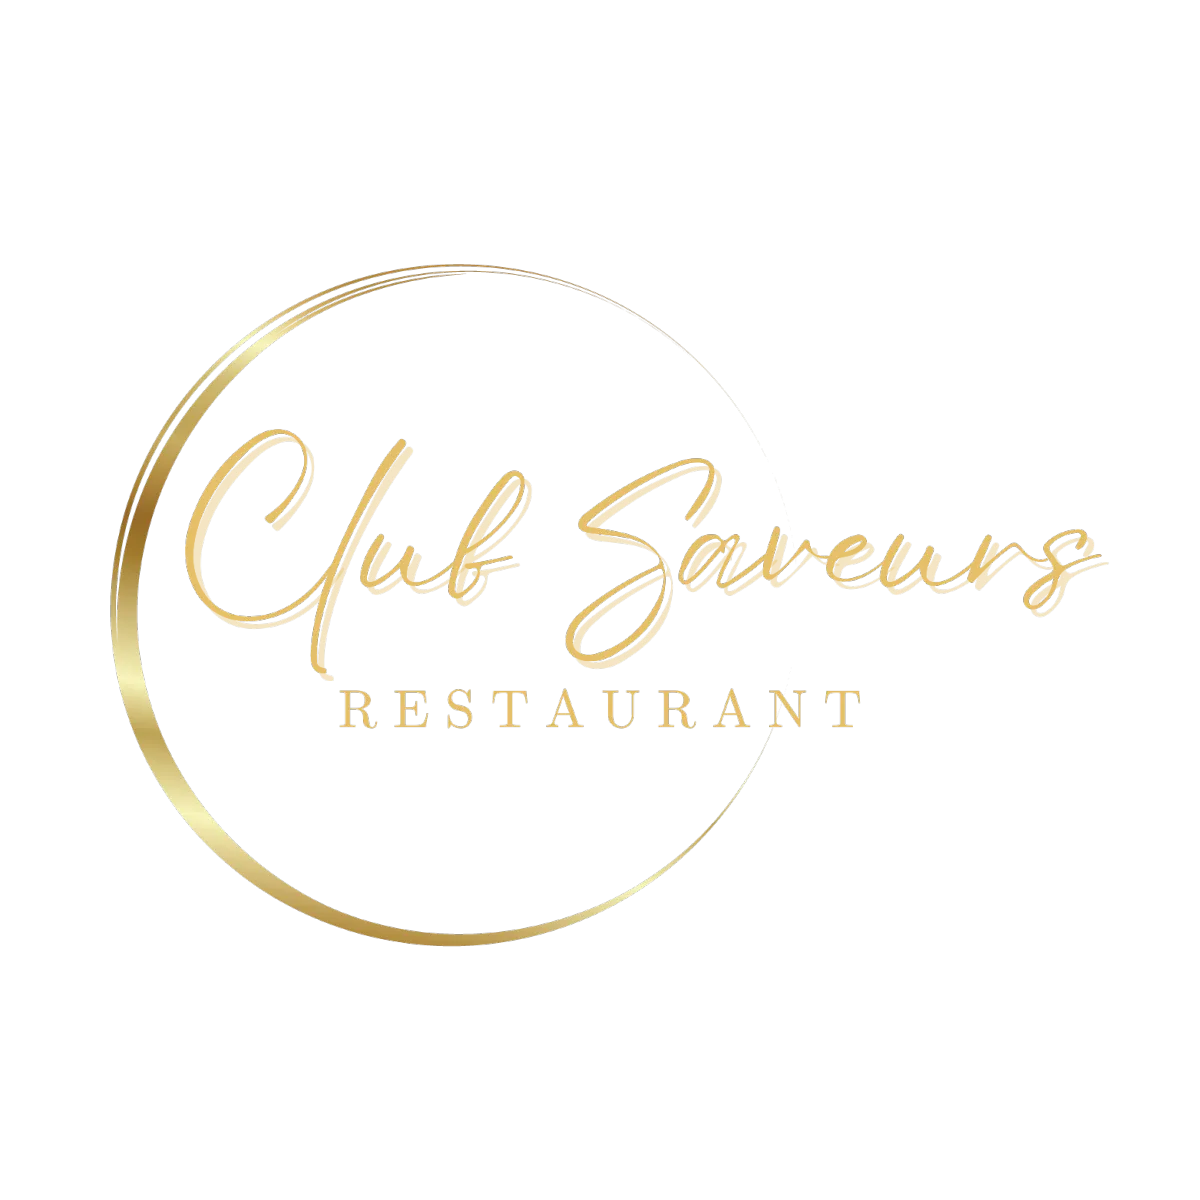 Restaurant Club Saveurs - Cuisine Traditionnel semi-gastroomique